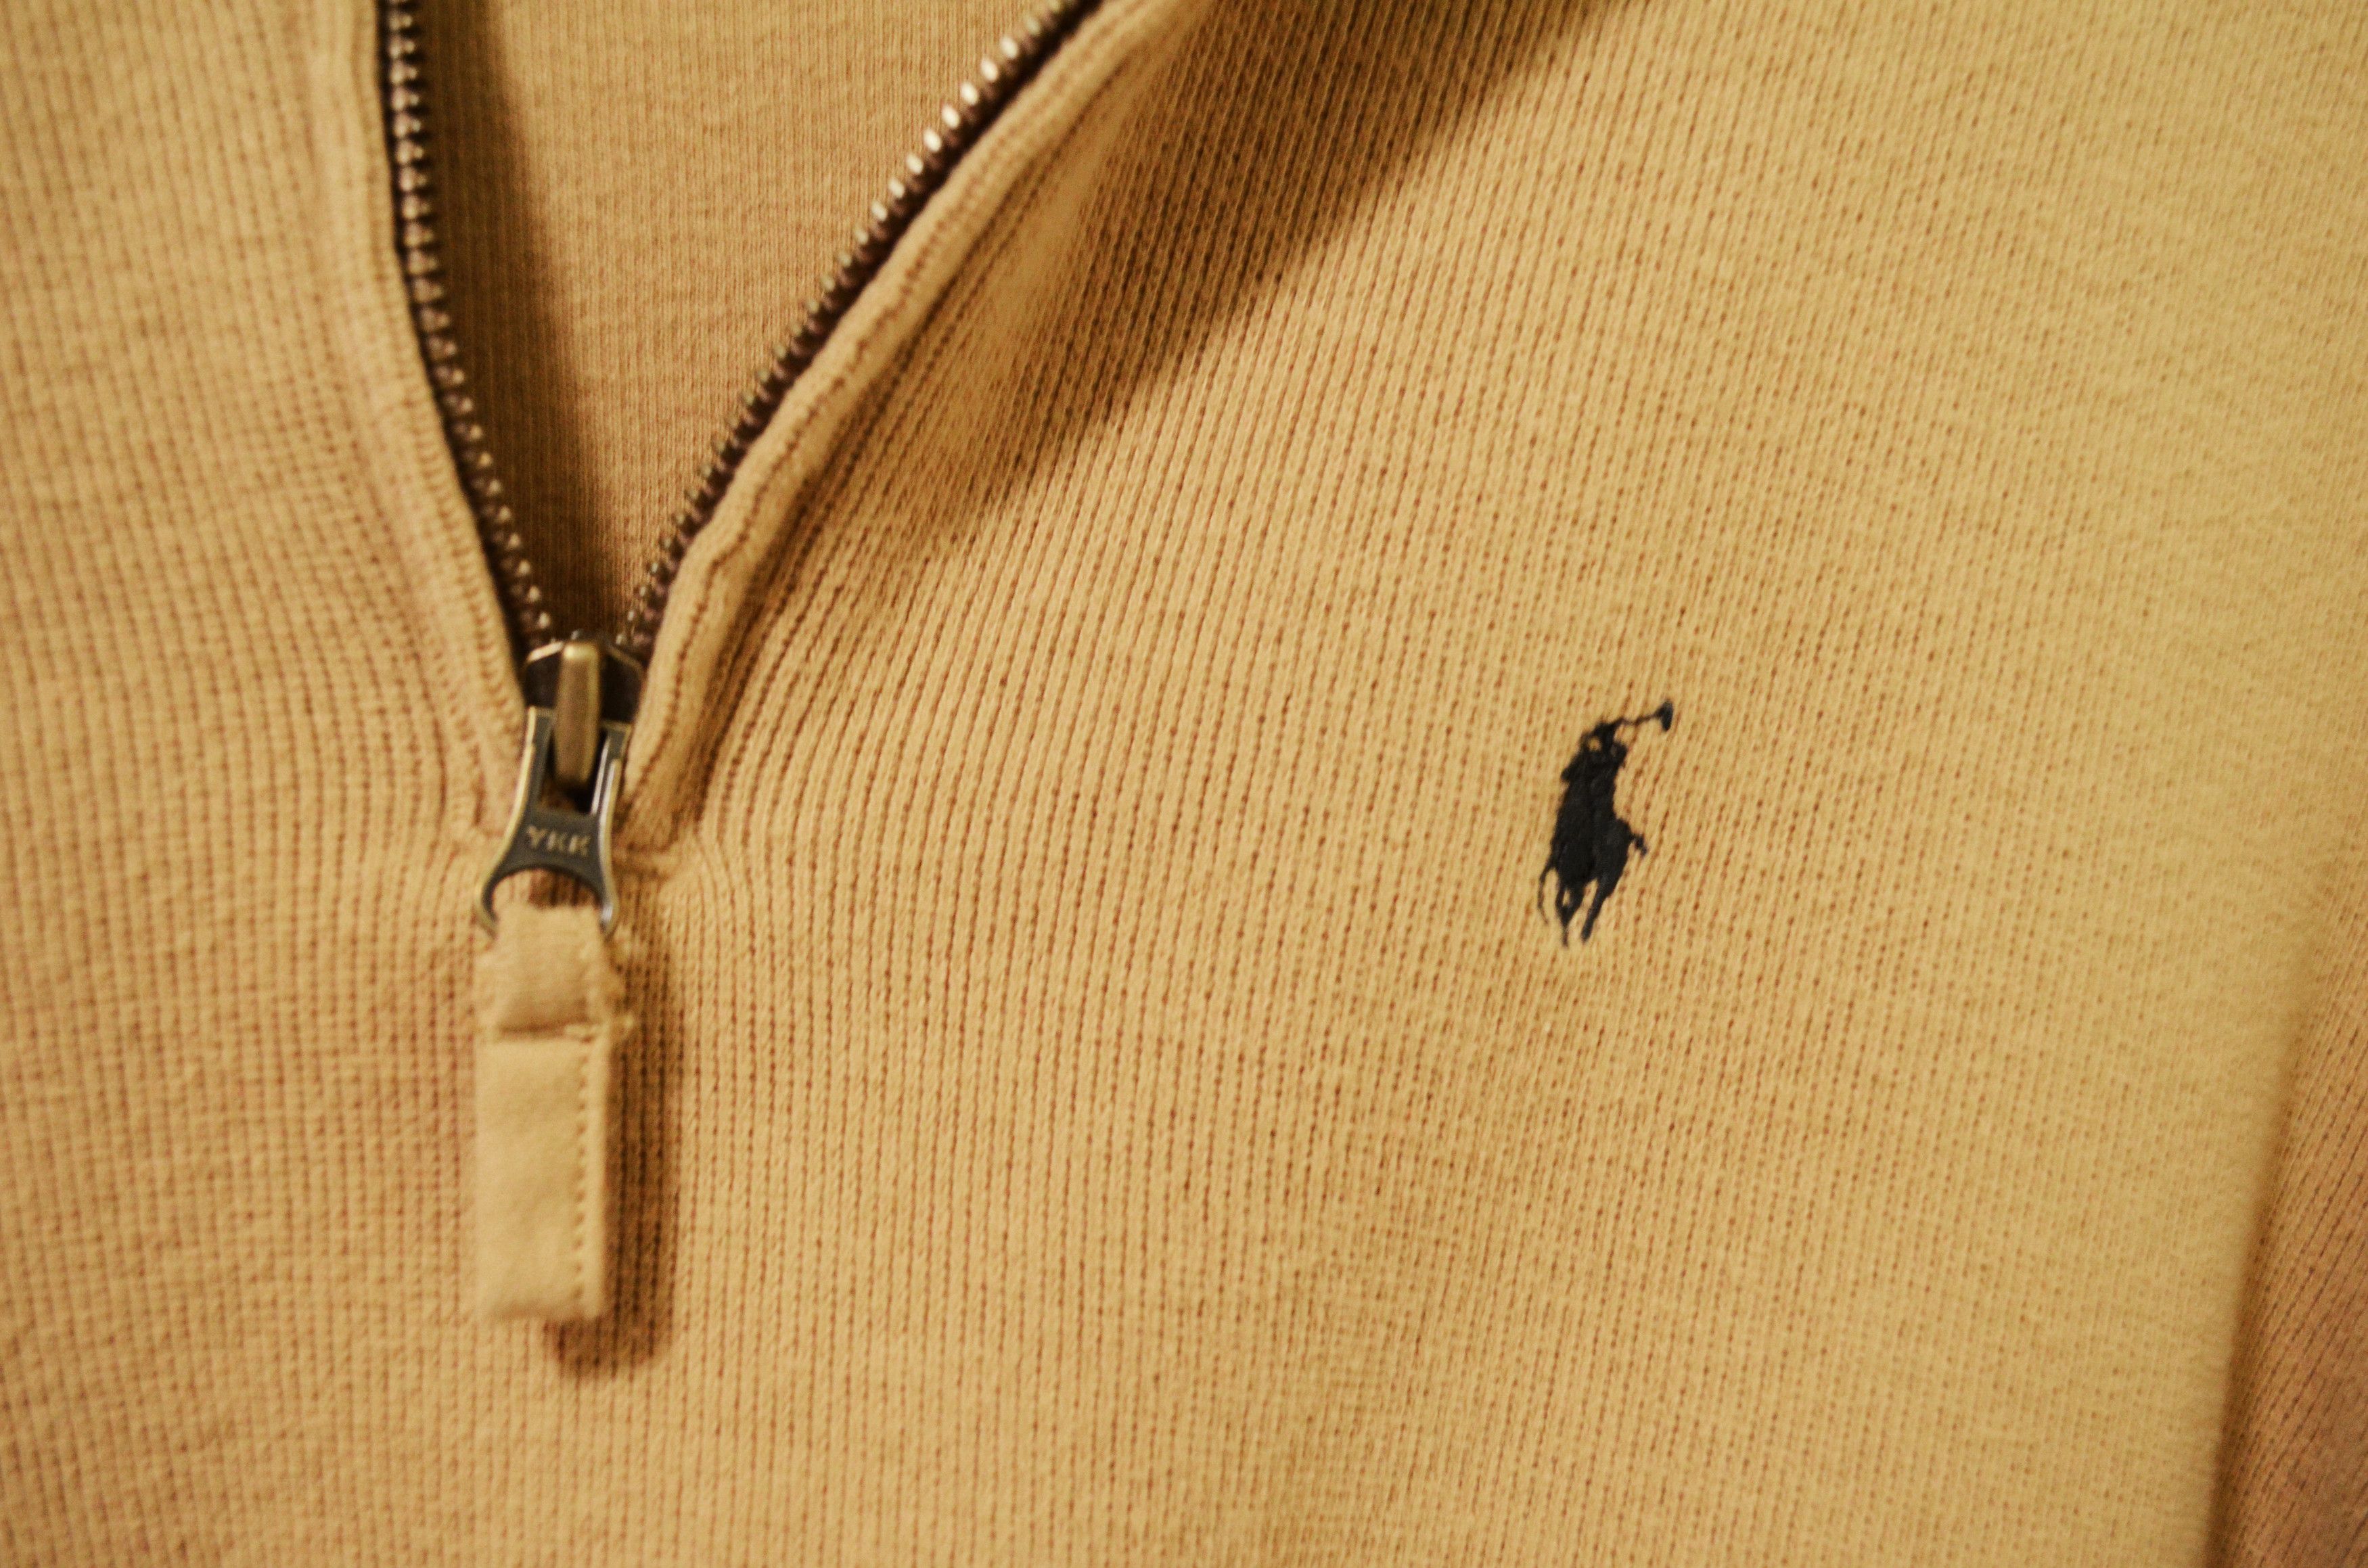 Polo Ralph Lauren Polo Ralph Lauren Light Brown Zip-Up Sweater Size US L / EU 52-54 / 3 - 4 Preview